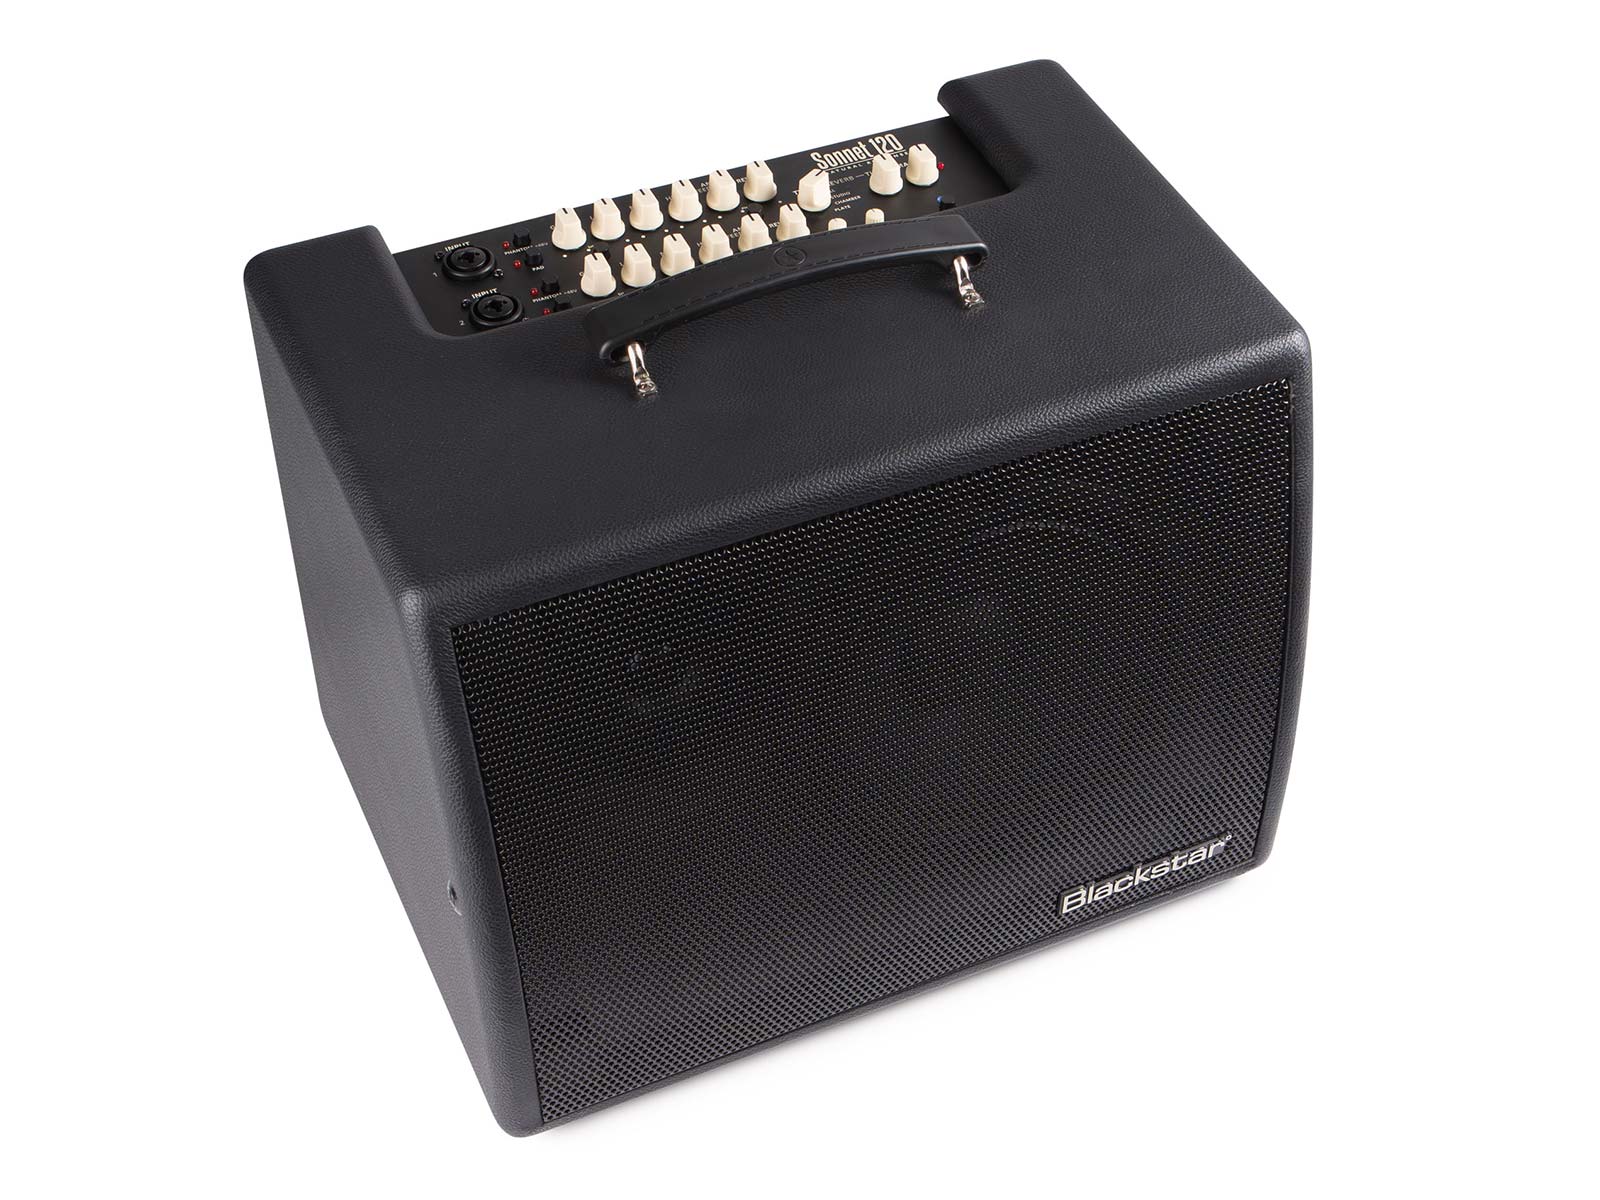 Blackstar Amps Sonnet 120 Acoustic Amplifier - Black